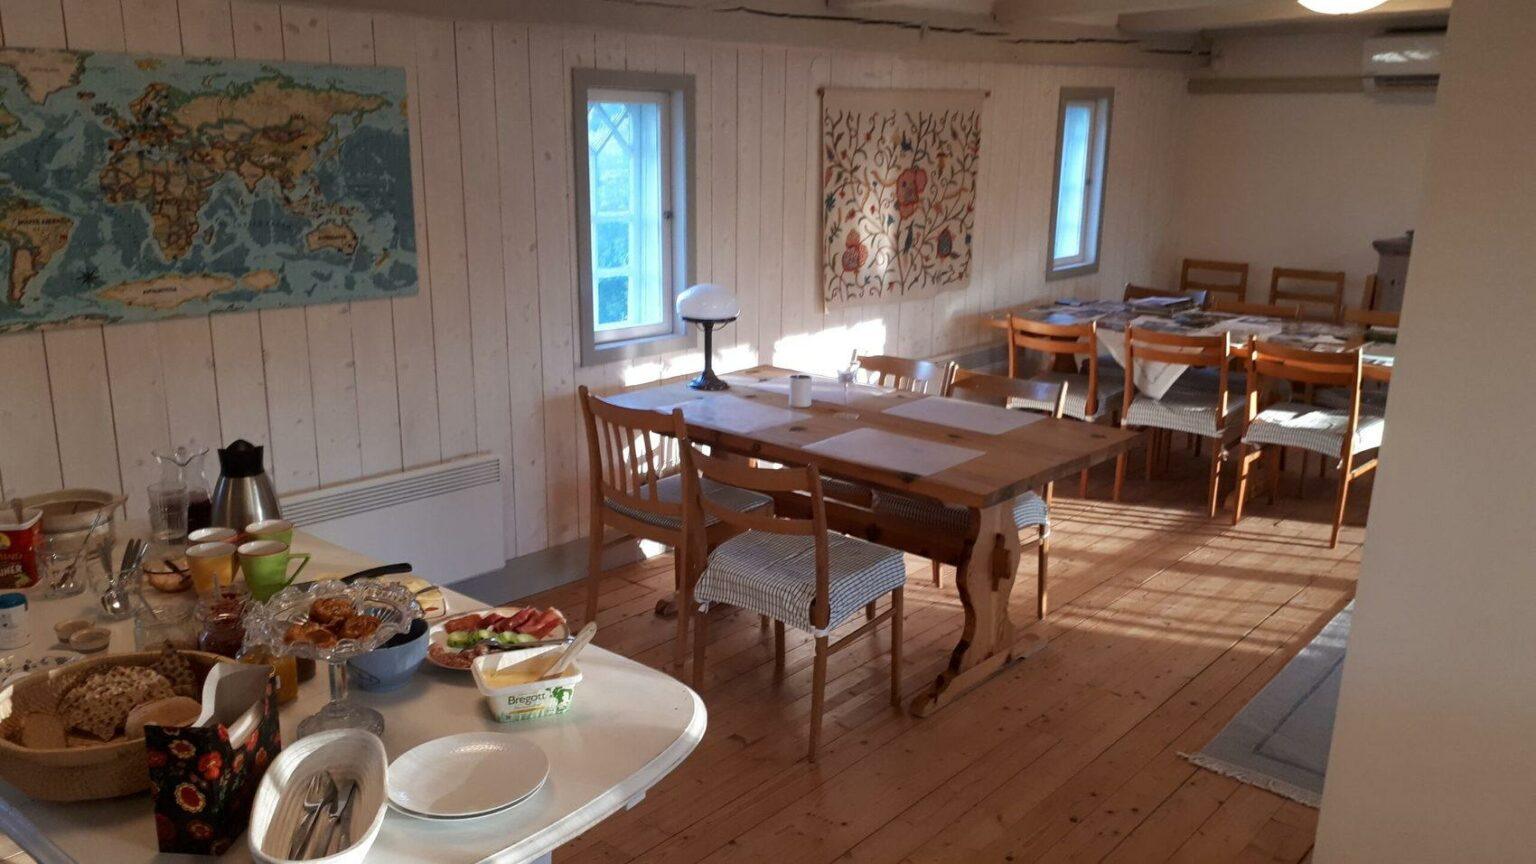 Matsal med bord och stolar. I förgrunden står en frukostbuffé uppdukad.